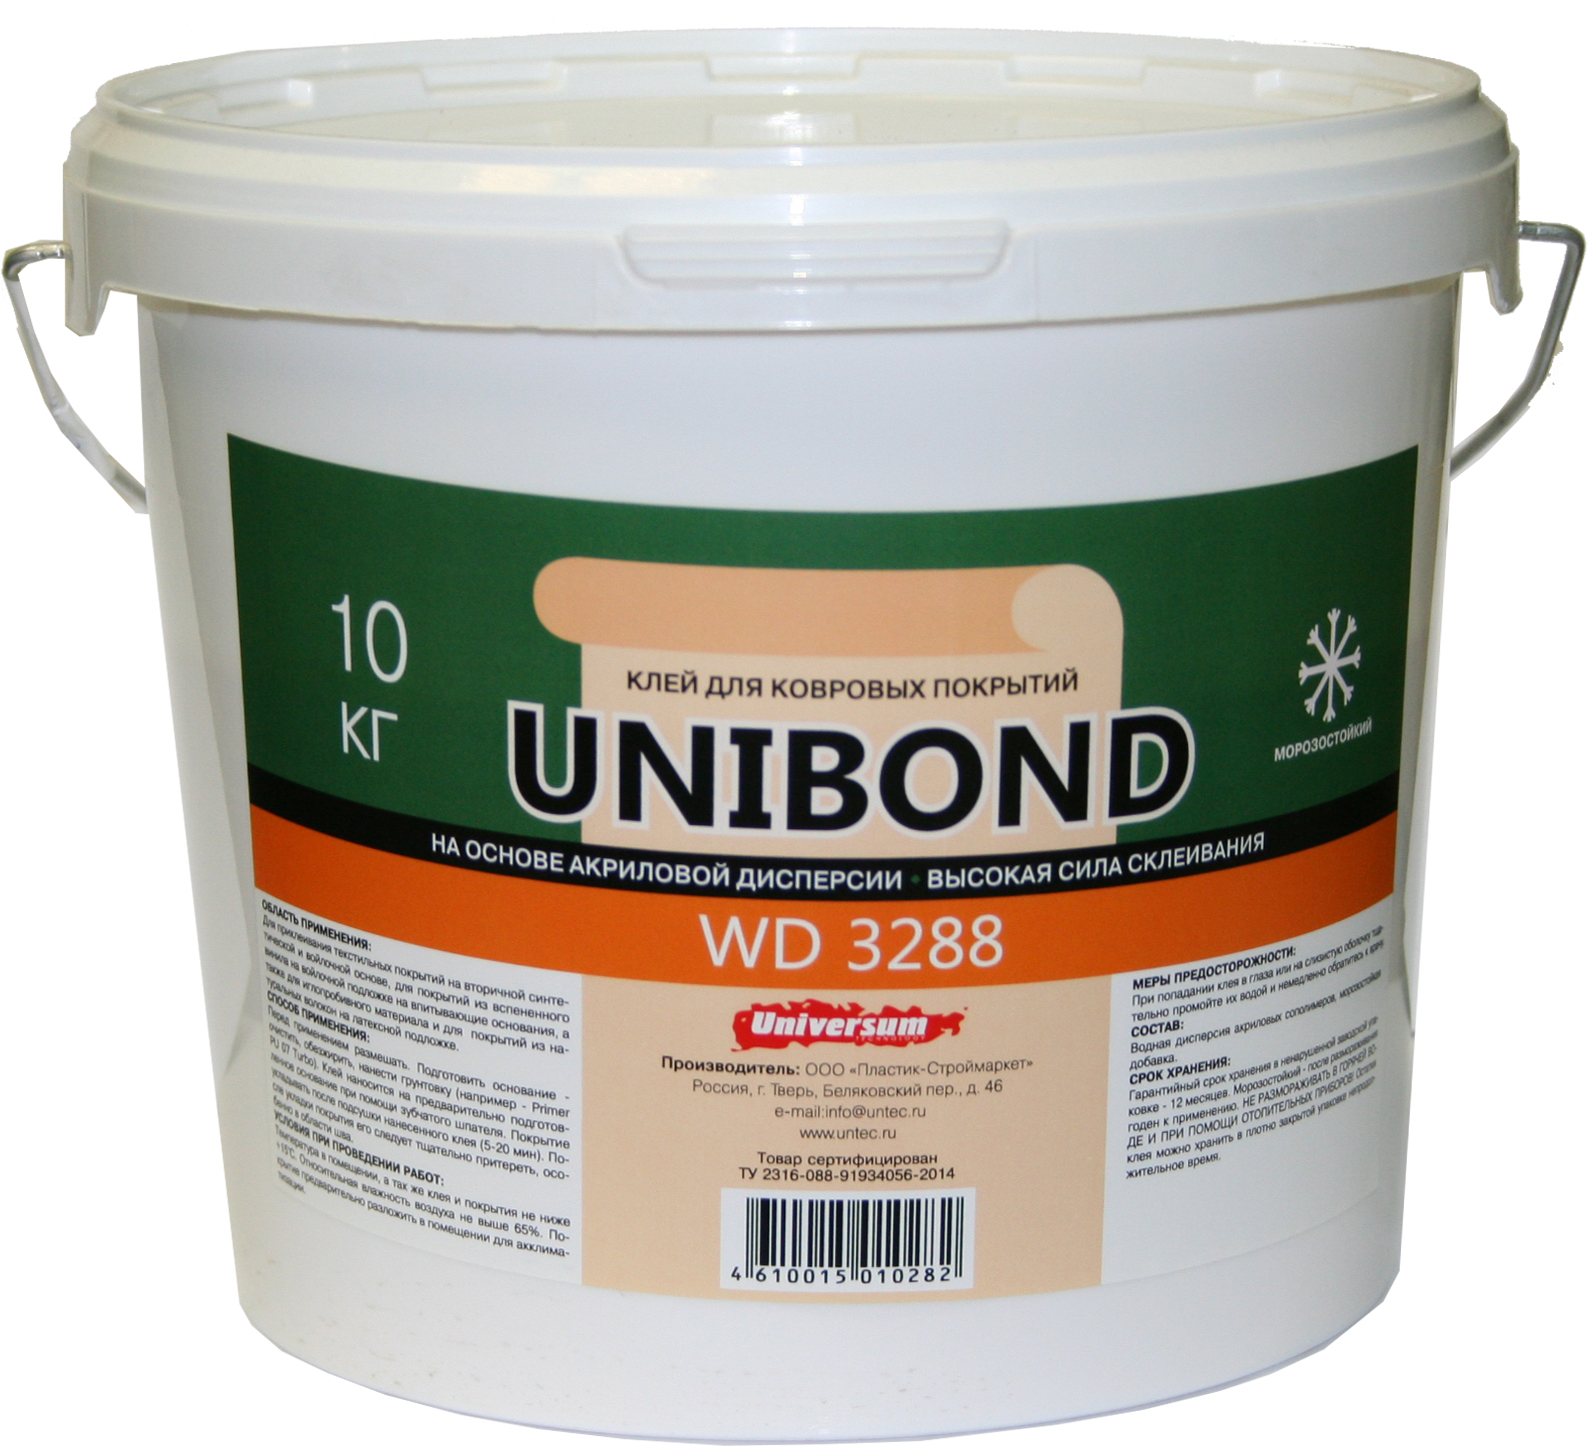 UNIBOND WD 3288 Клей для укладки текстильных покрытий